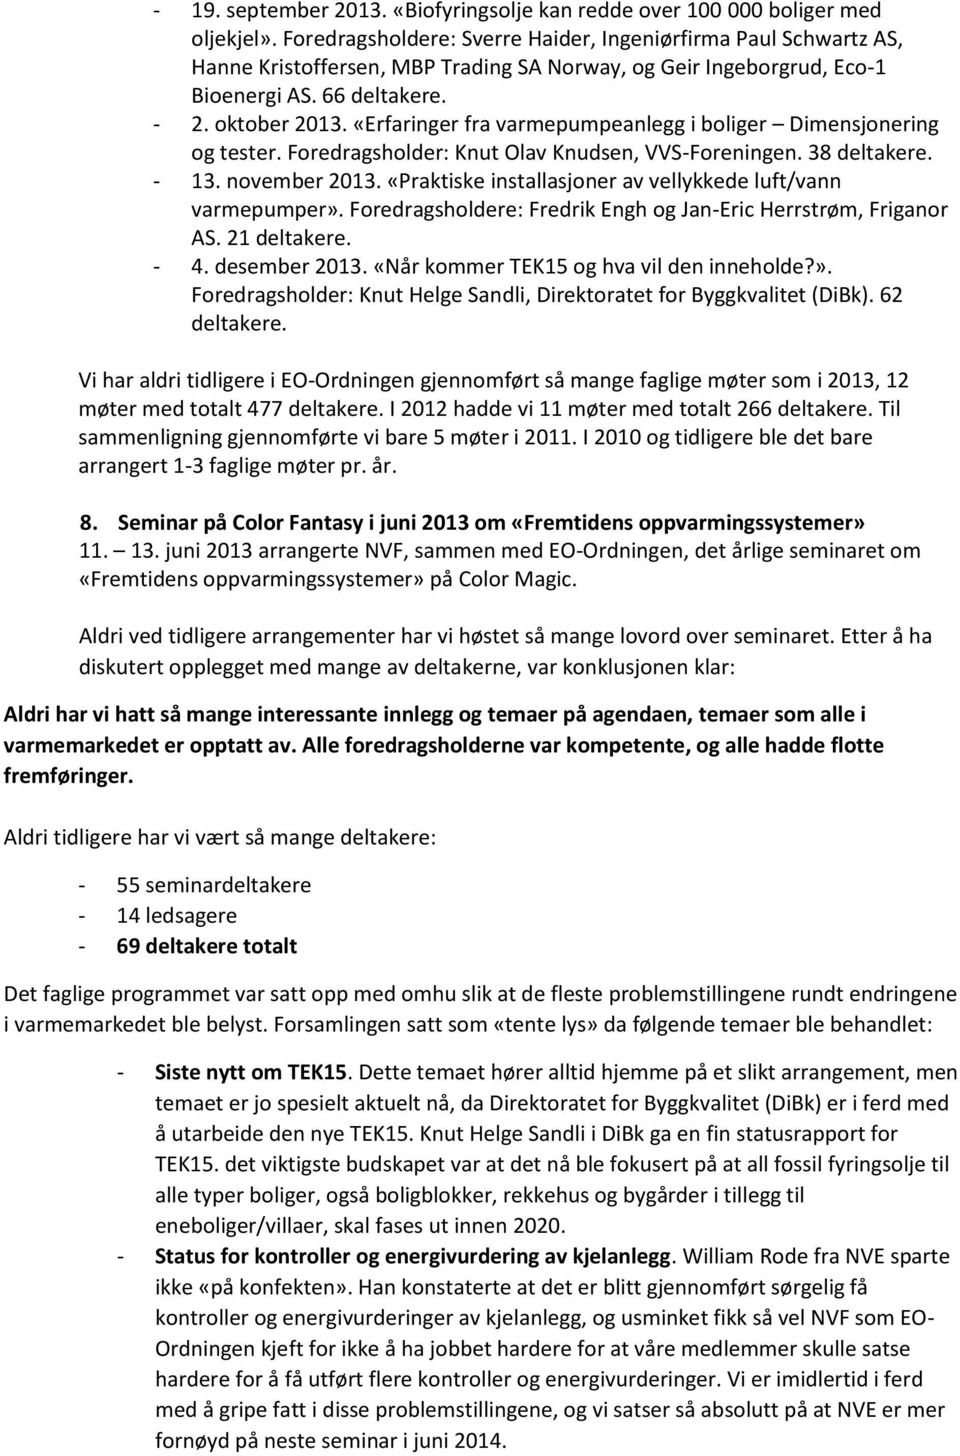 «Erfaringer fra varmepumpeanlegg i boliger Dimensjonering og tester. Foredragsholder: Knut Olav Knudsen, VVS-Foreningen. 38 deltakere. - 13. november 2013.